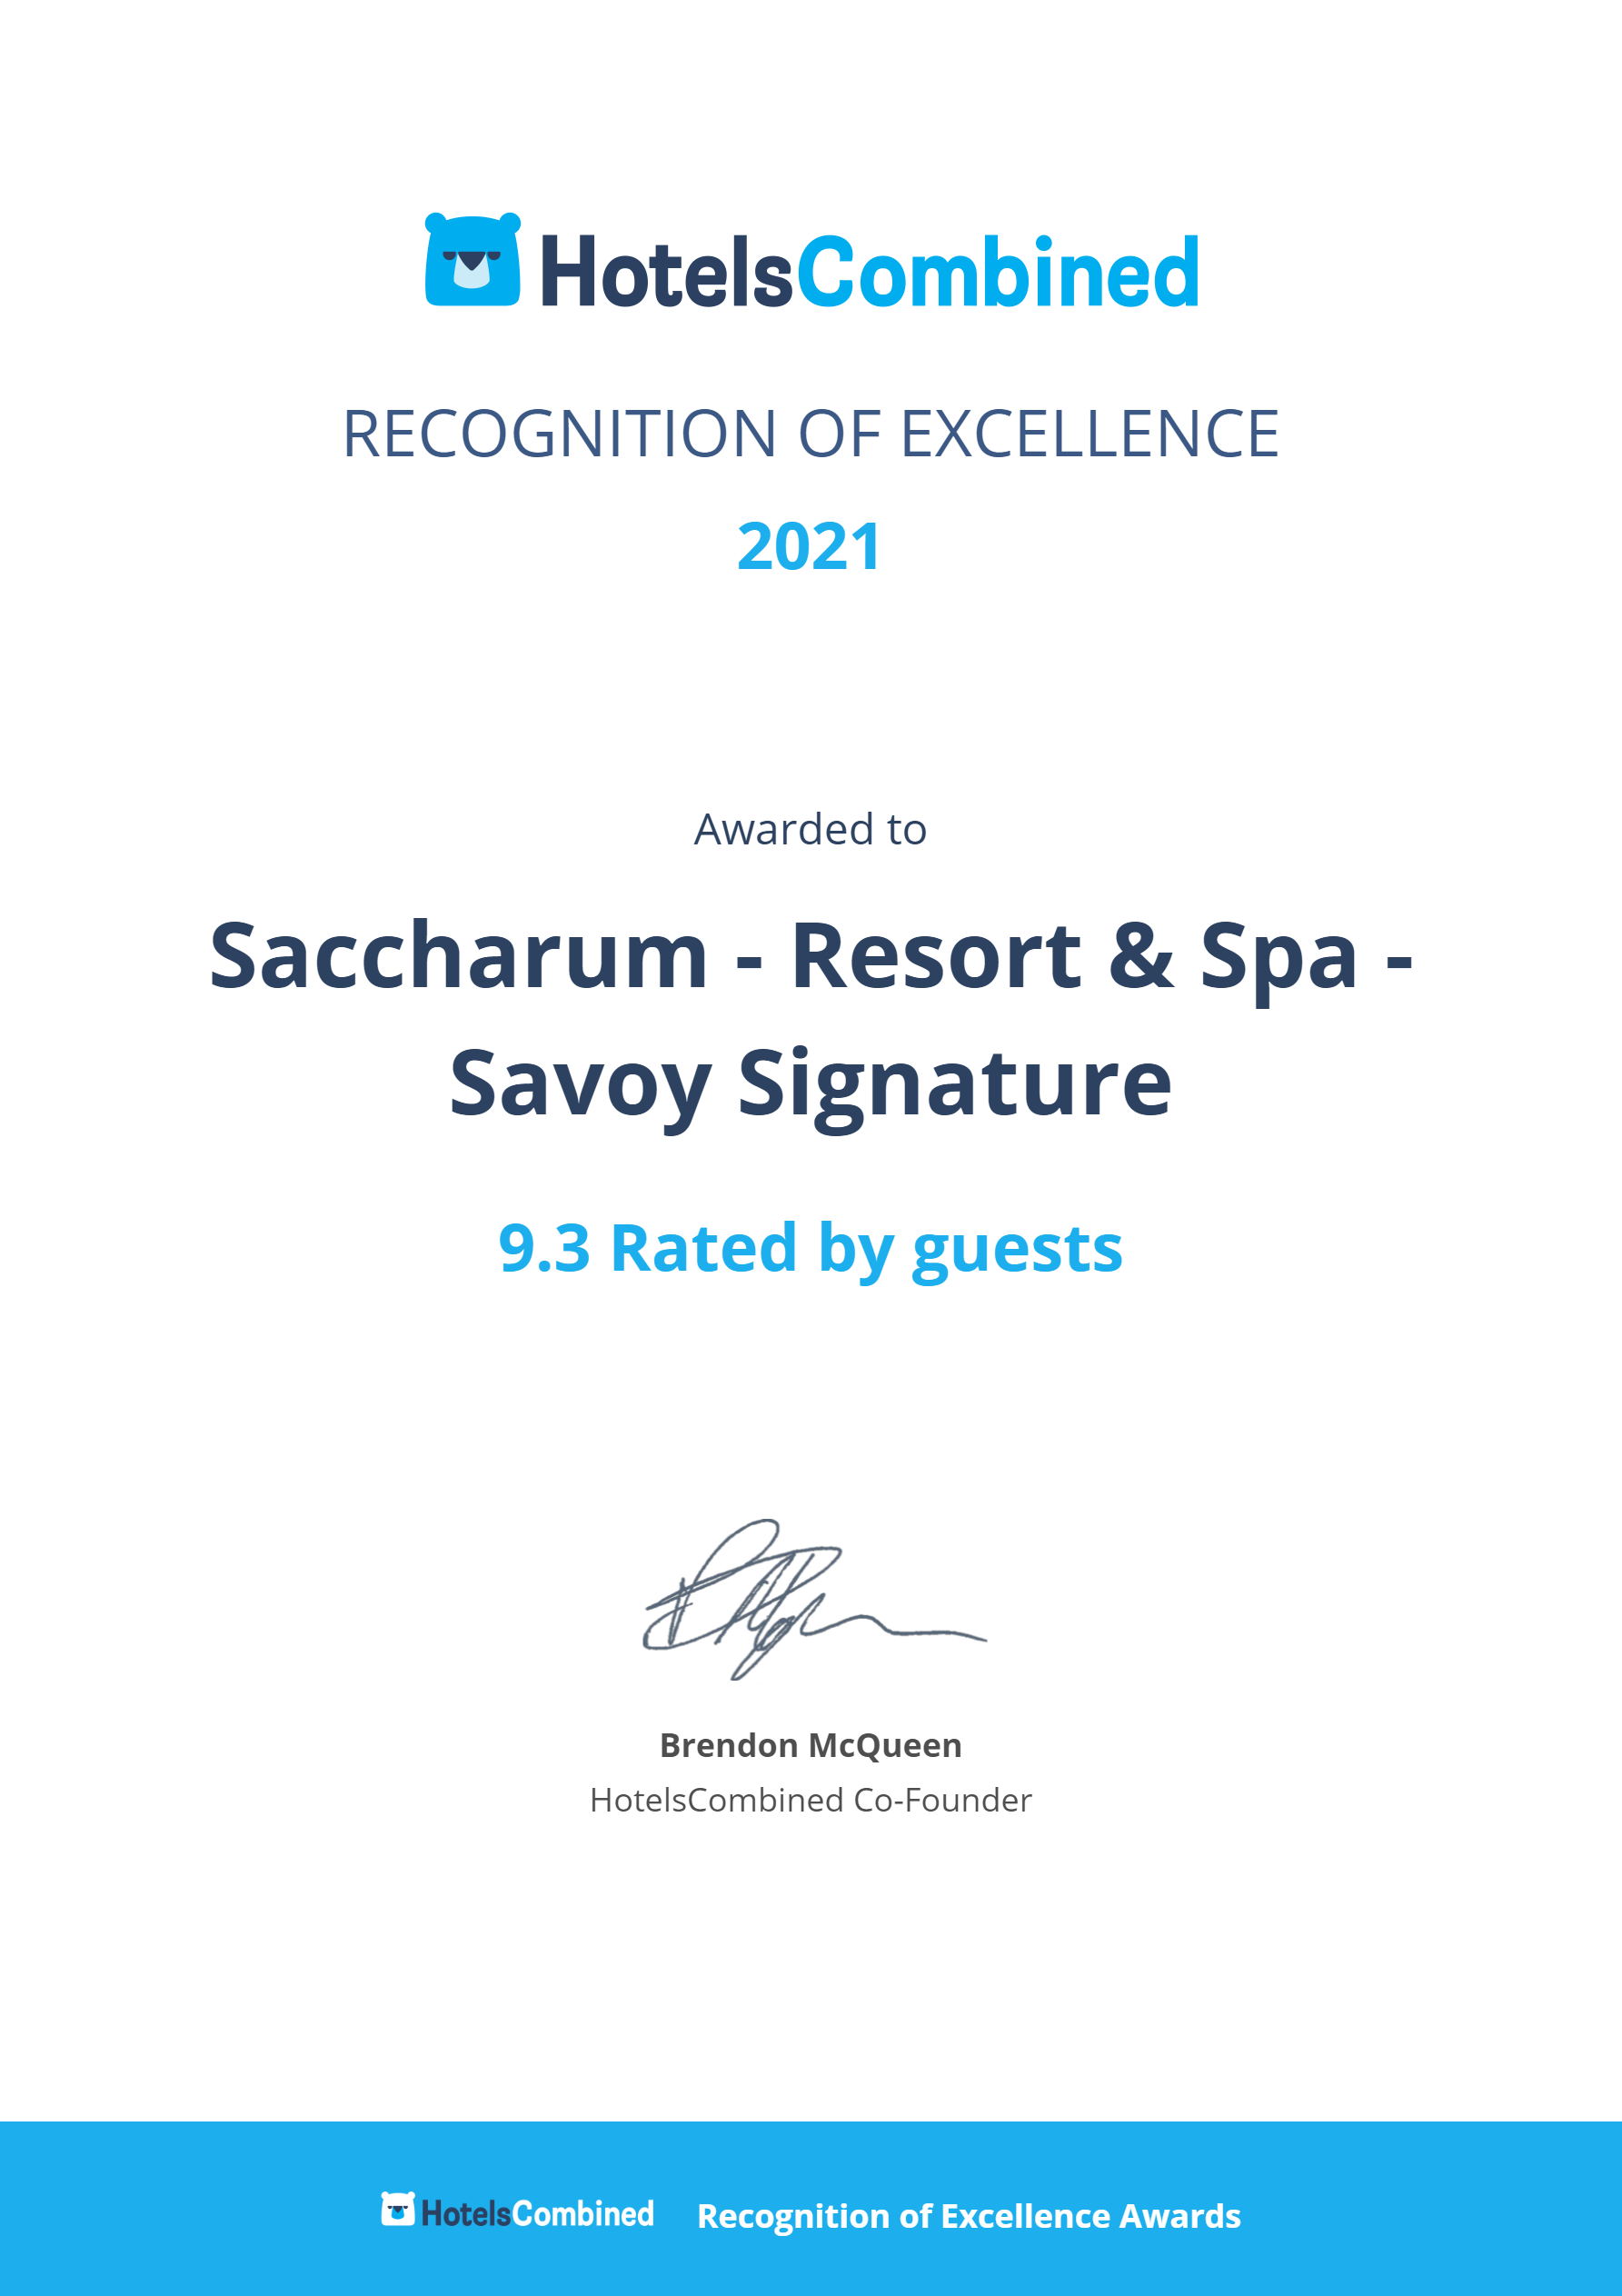 Saccharum_Certificate.png